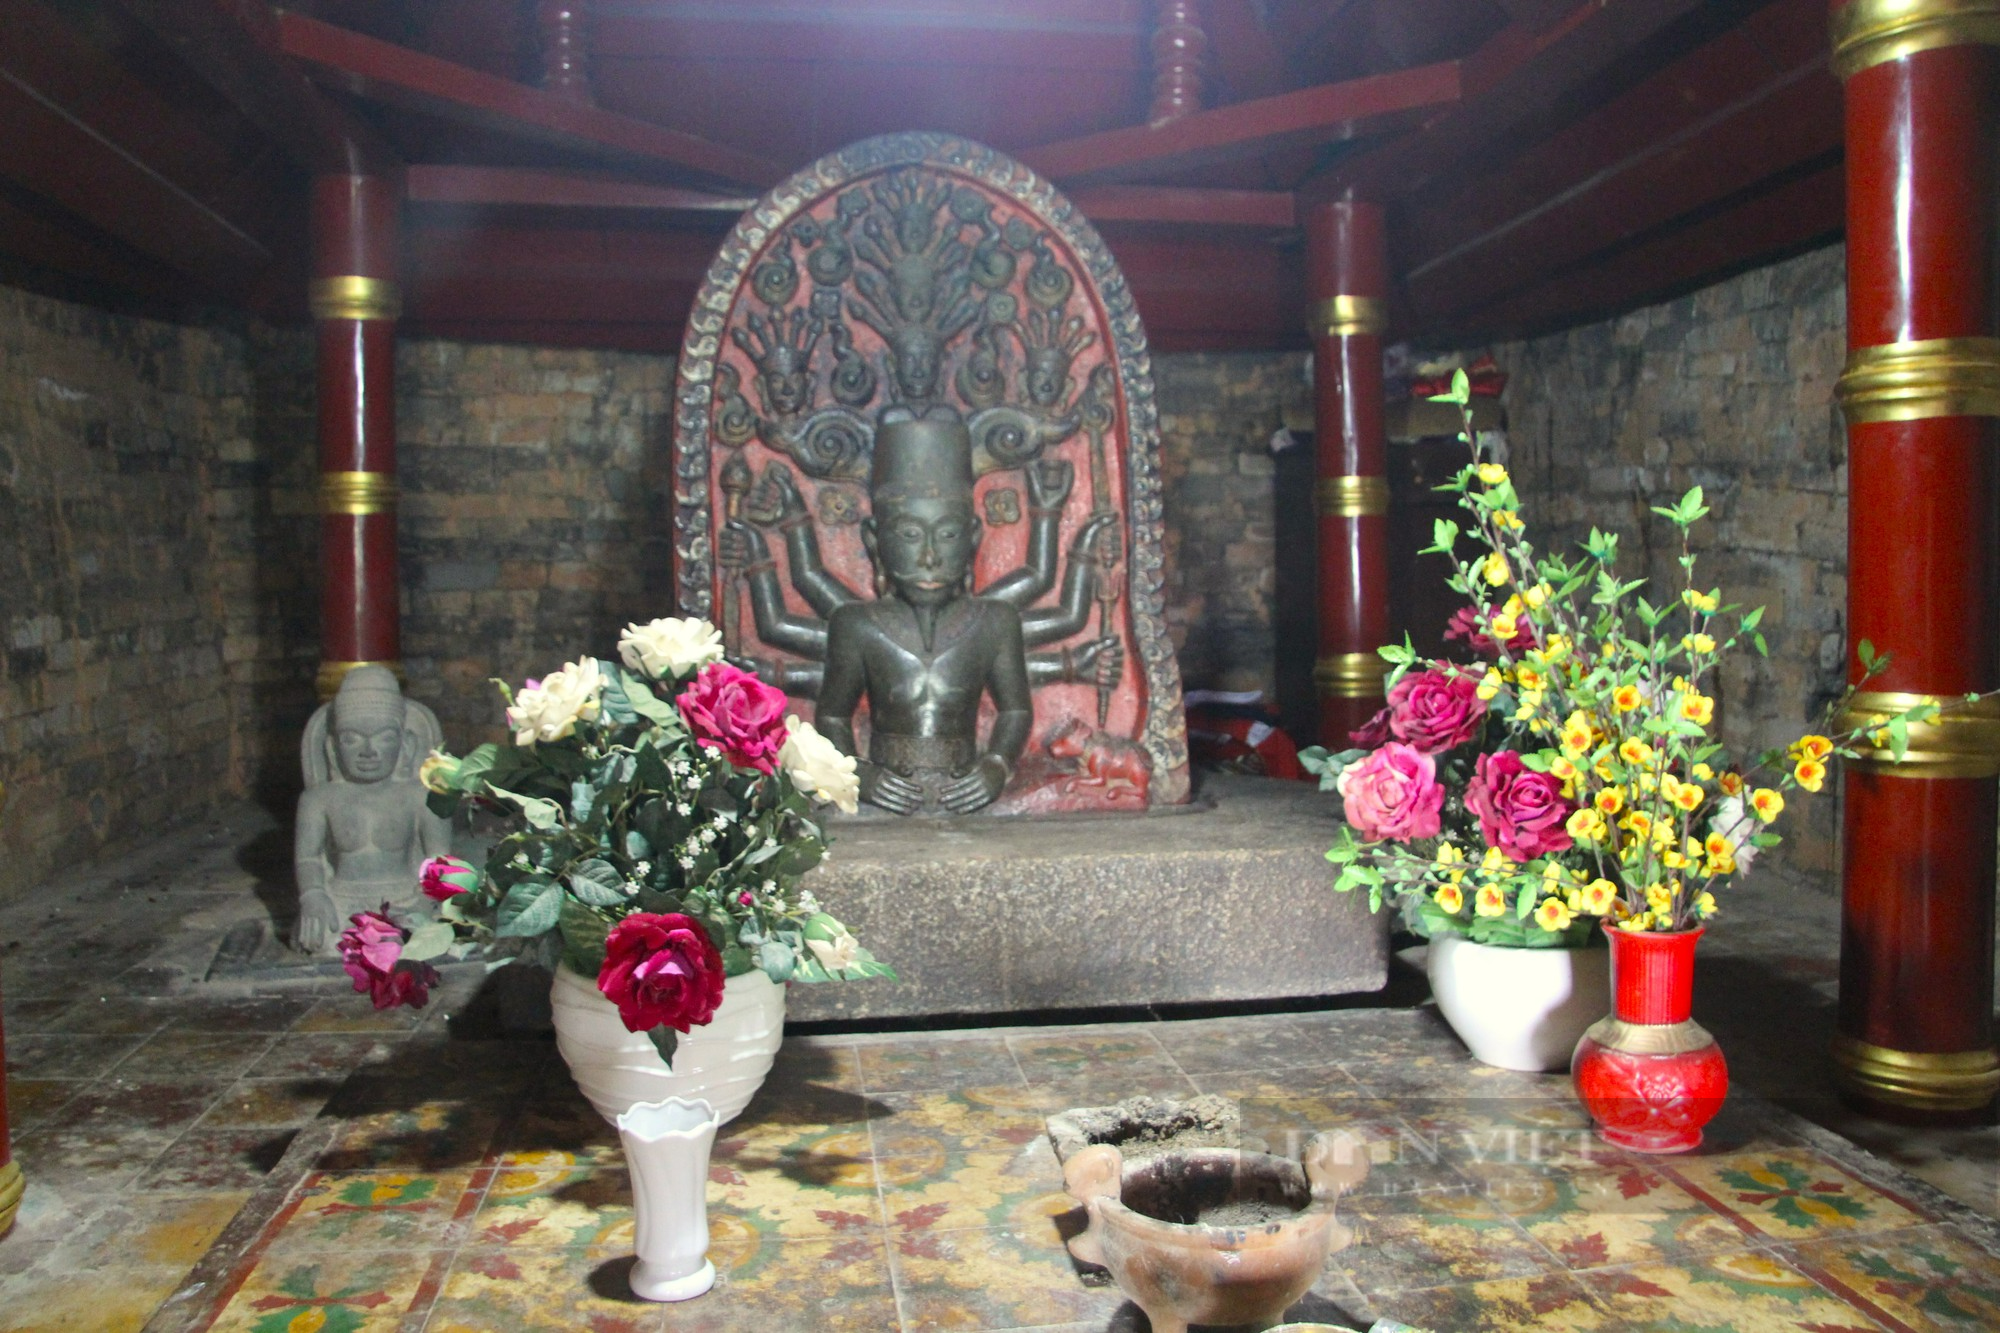 Bí ẩn bảo vật quốc gia bên trong tháp Chăm thờ vị vua cuối cùng của vương quốc Chămpa ở Ninh Thuận - Ảnh 7.